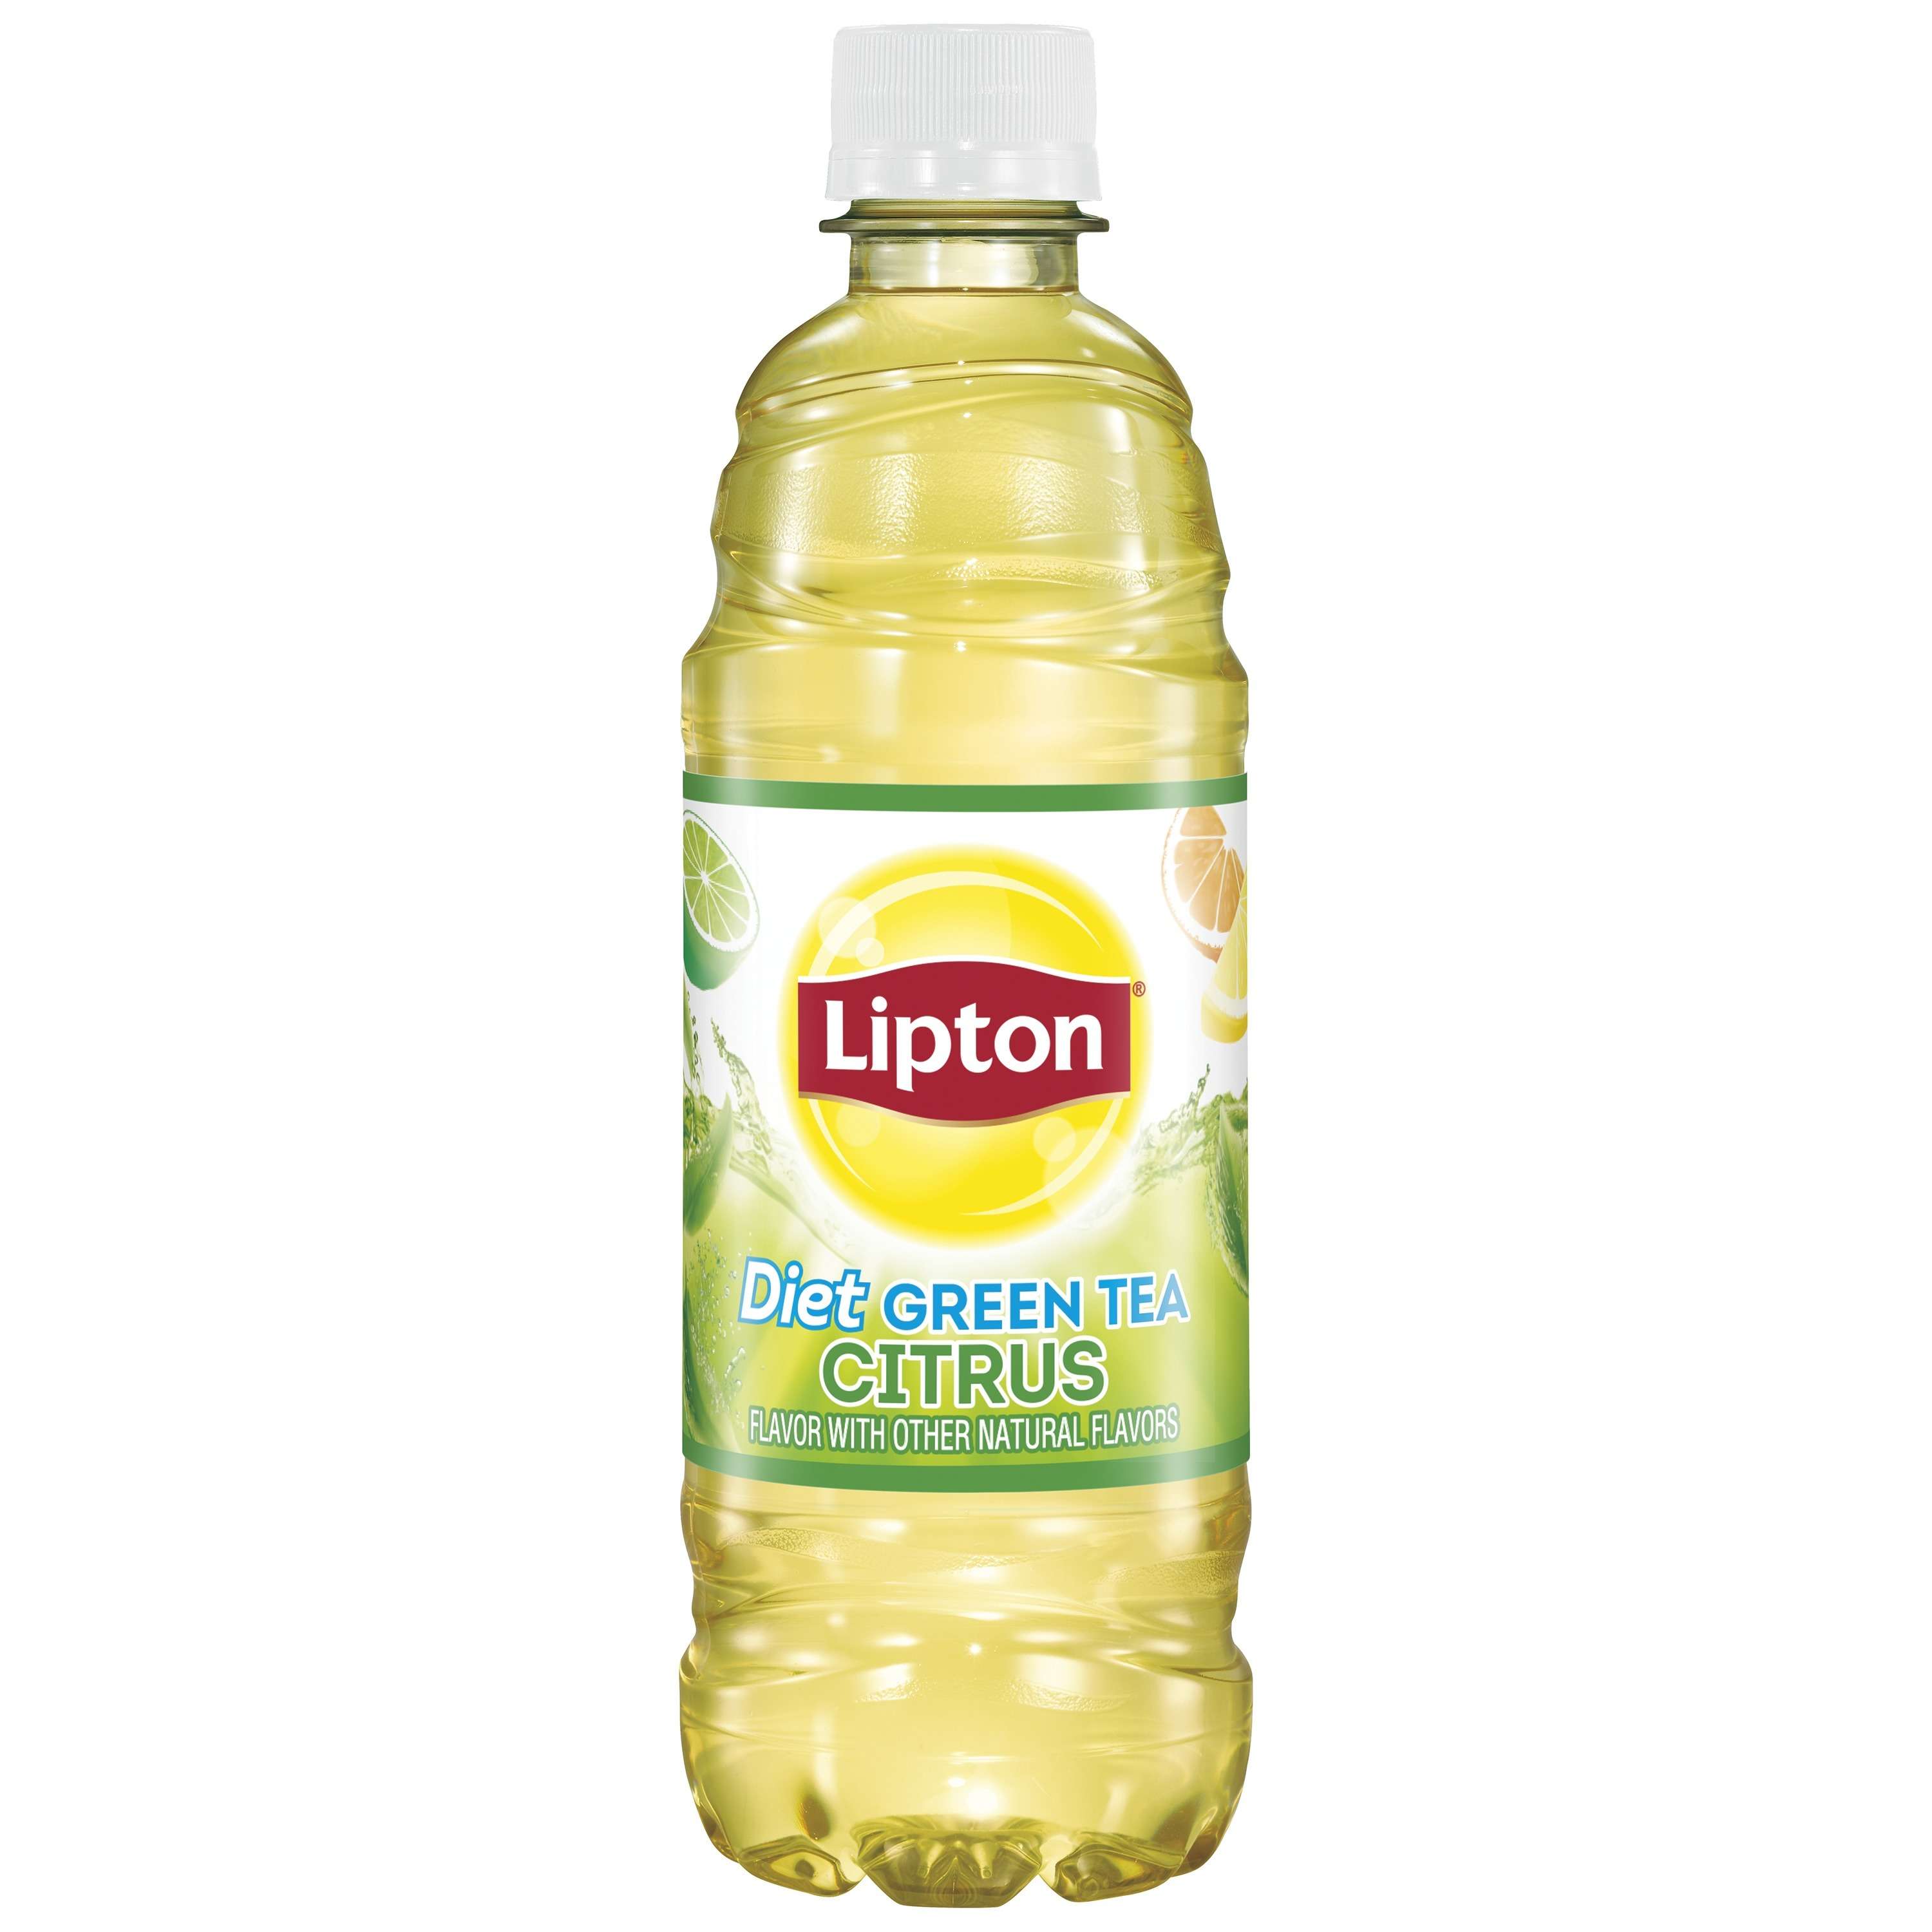 Lipton Diet Green Tea Citrus Iced Tea, Bottled Tea Drink, 16.9 fl oz, 12 Pack Bottles - image 4 of 5